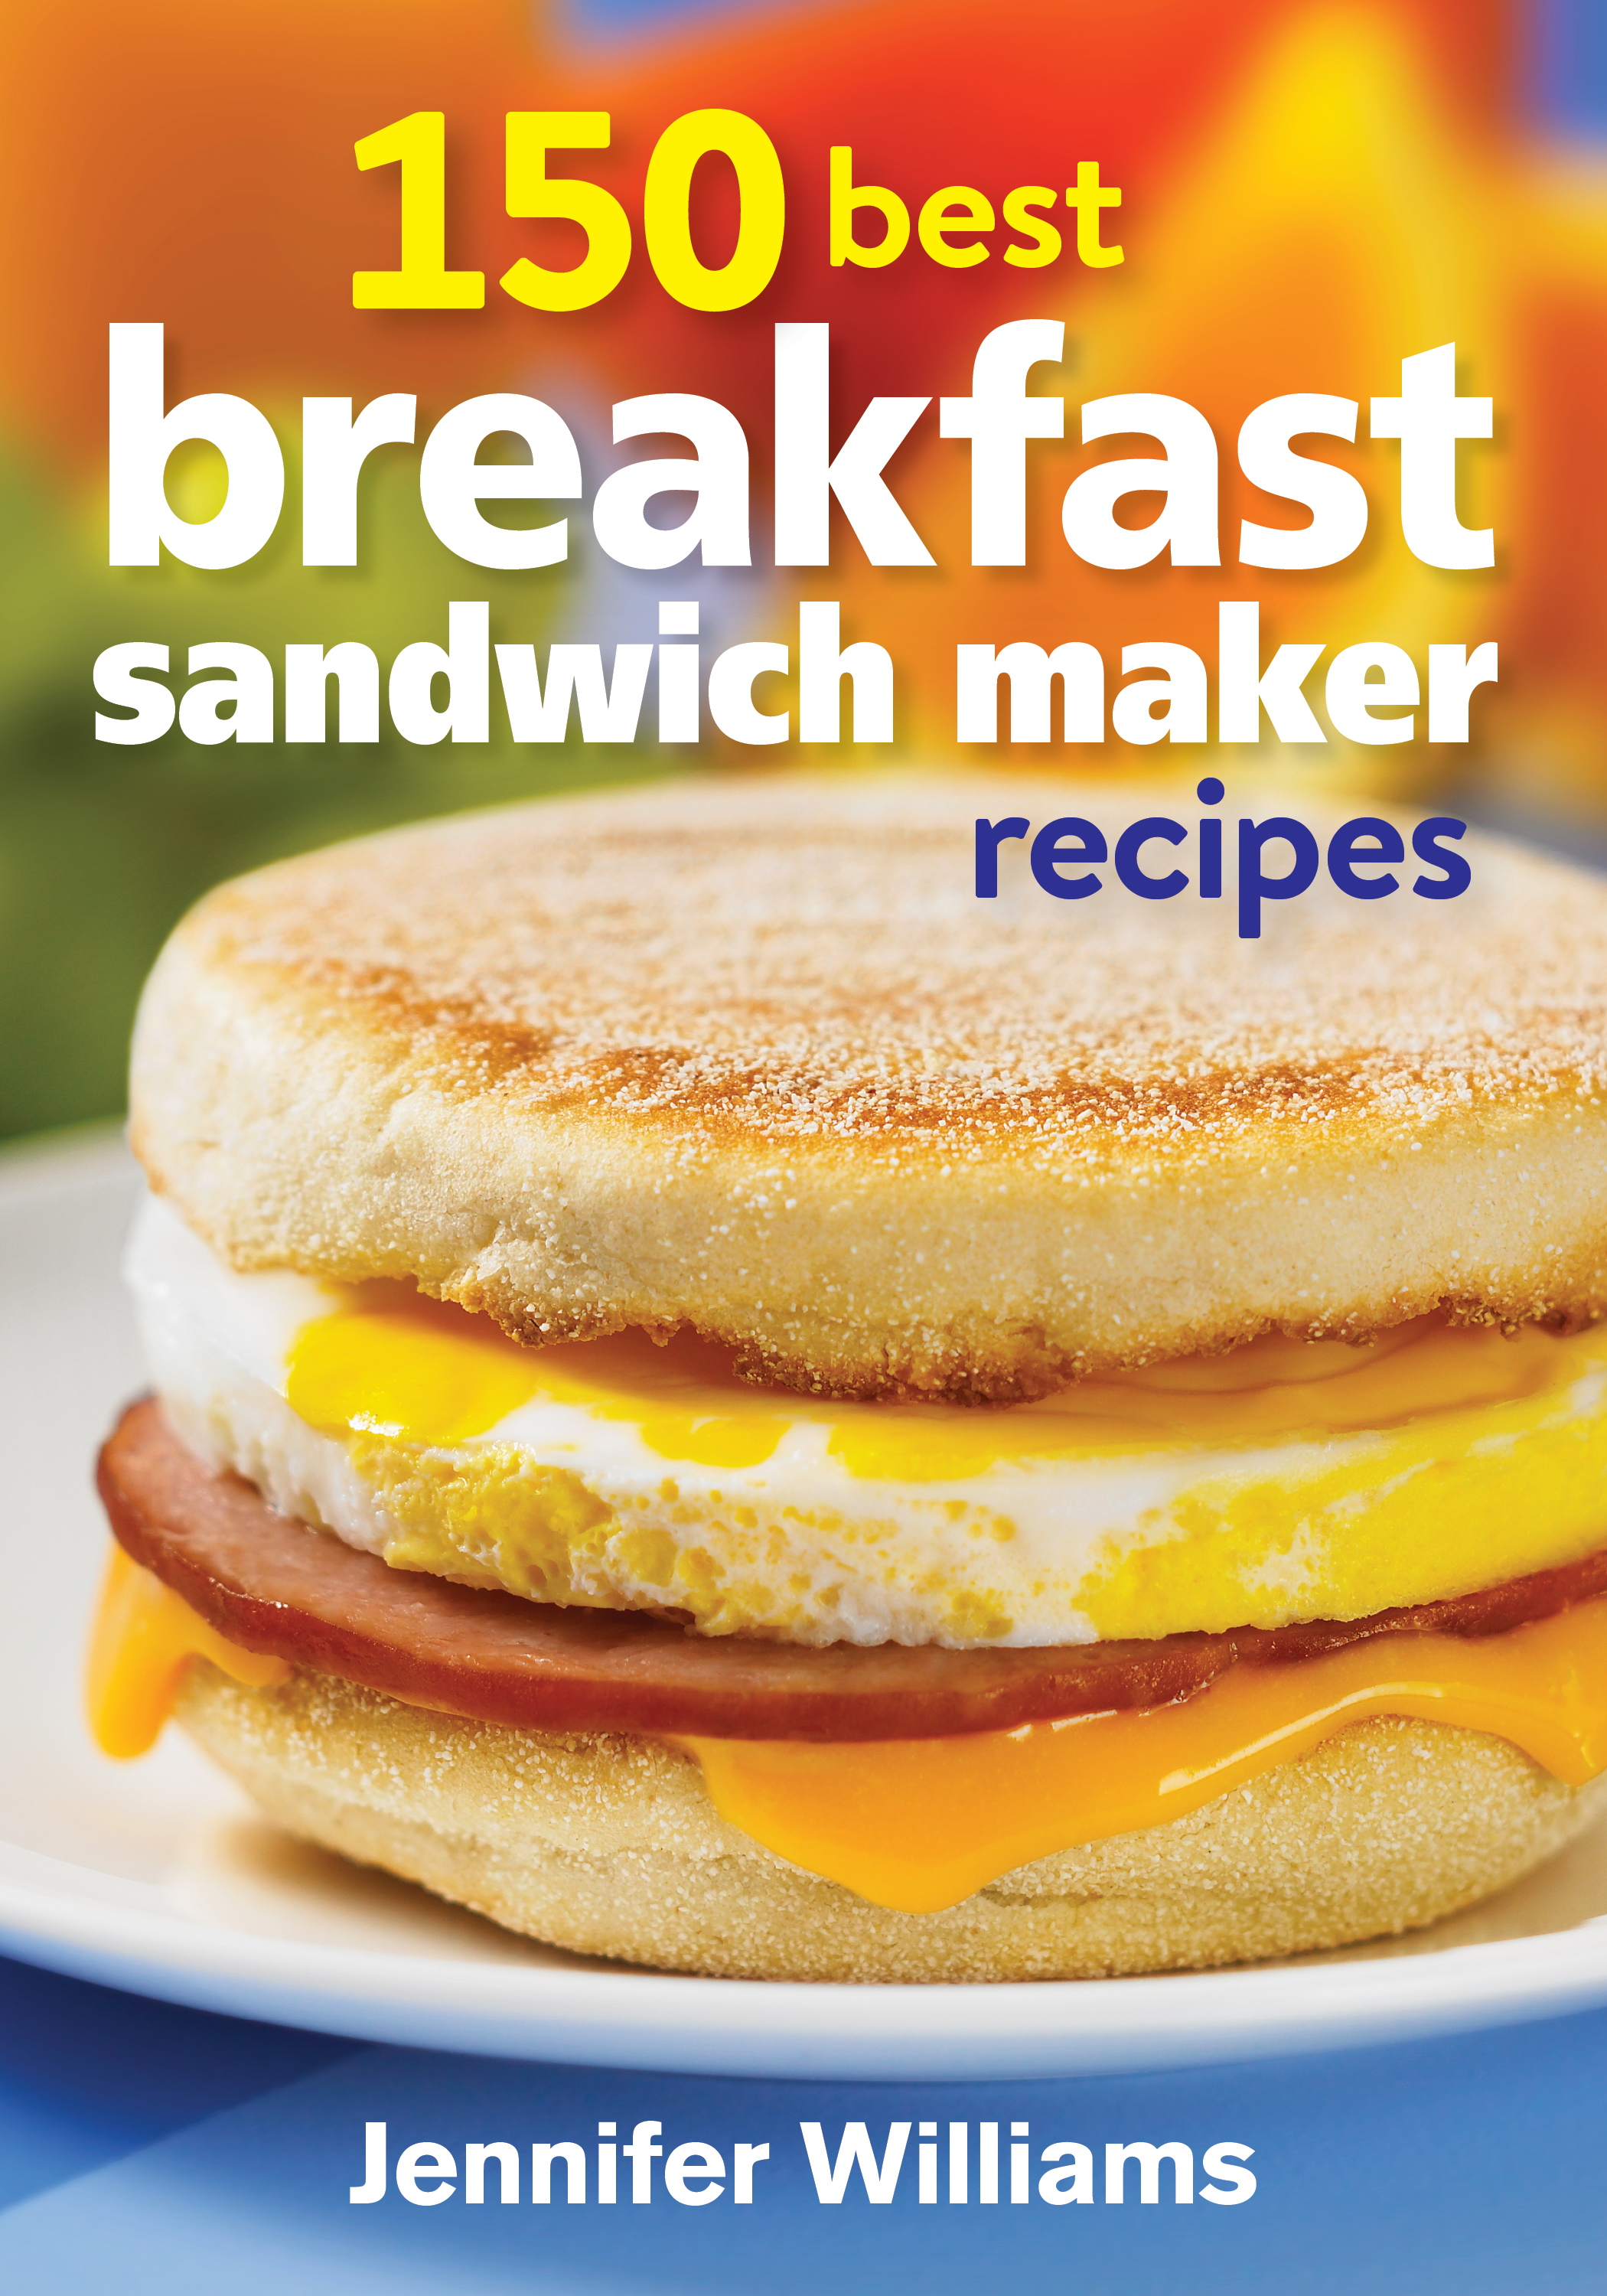 Forget about skipping breakfast- 150 Best Breakfast Sandwich Recipes